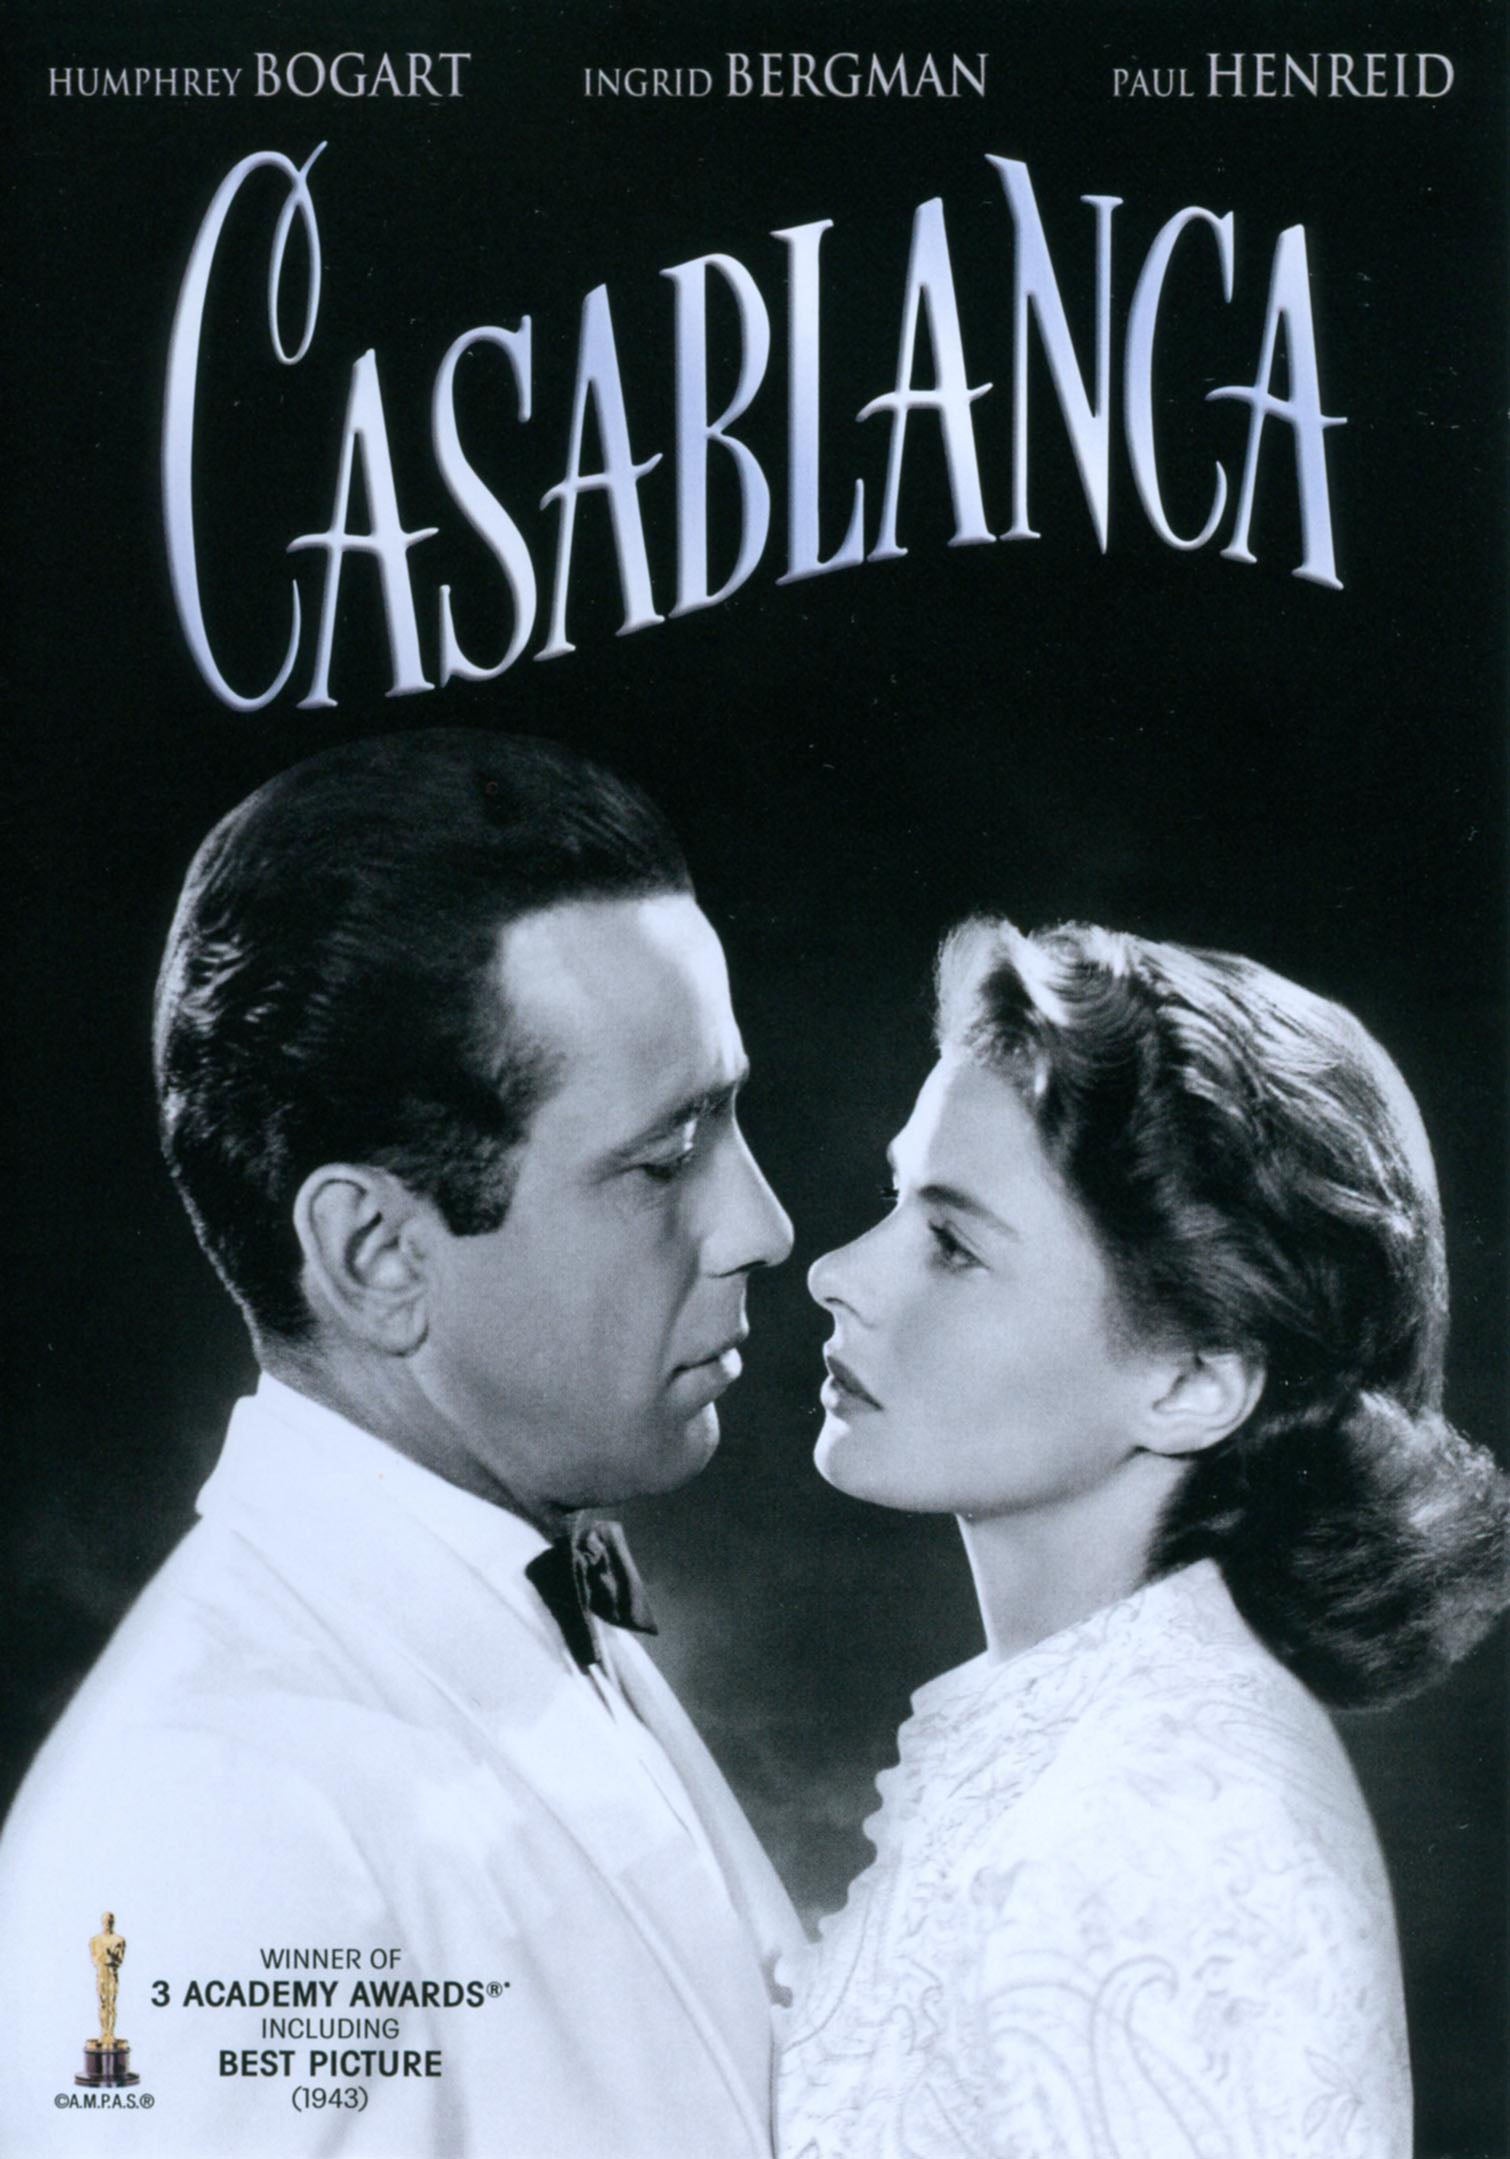 Casablanca [70th Anniversary] cover art